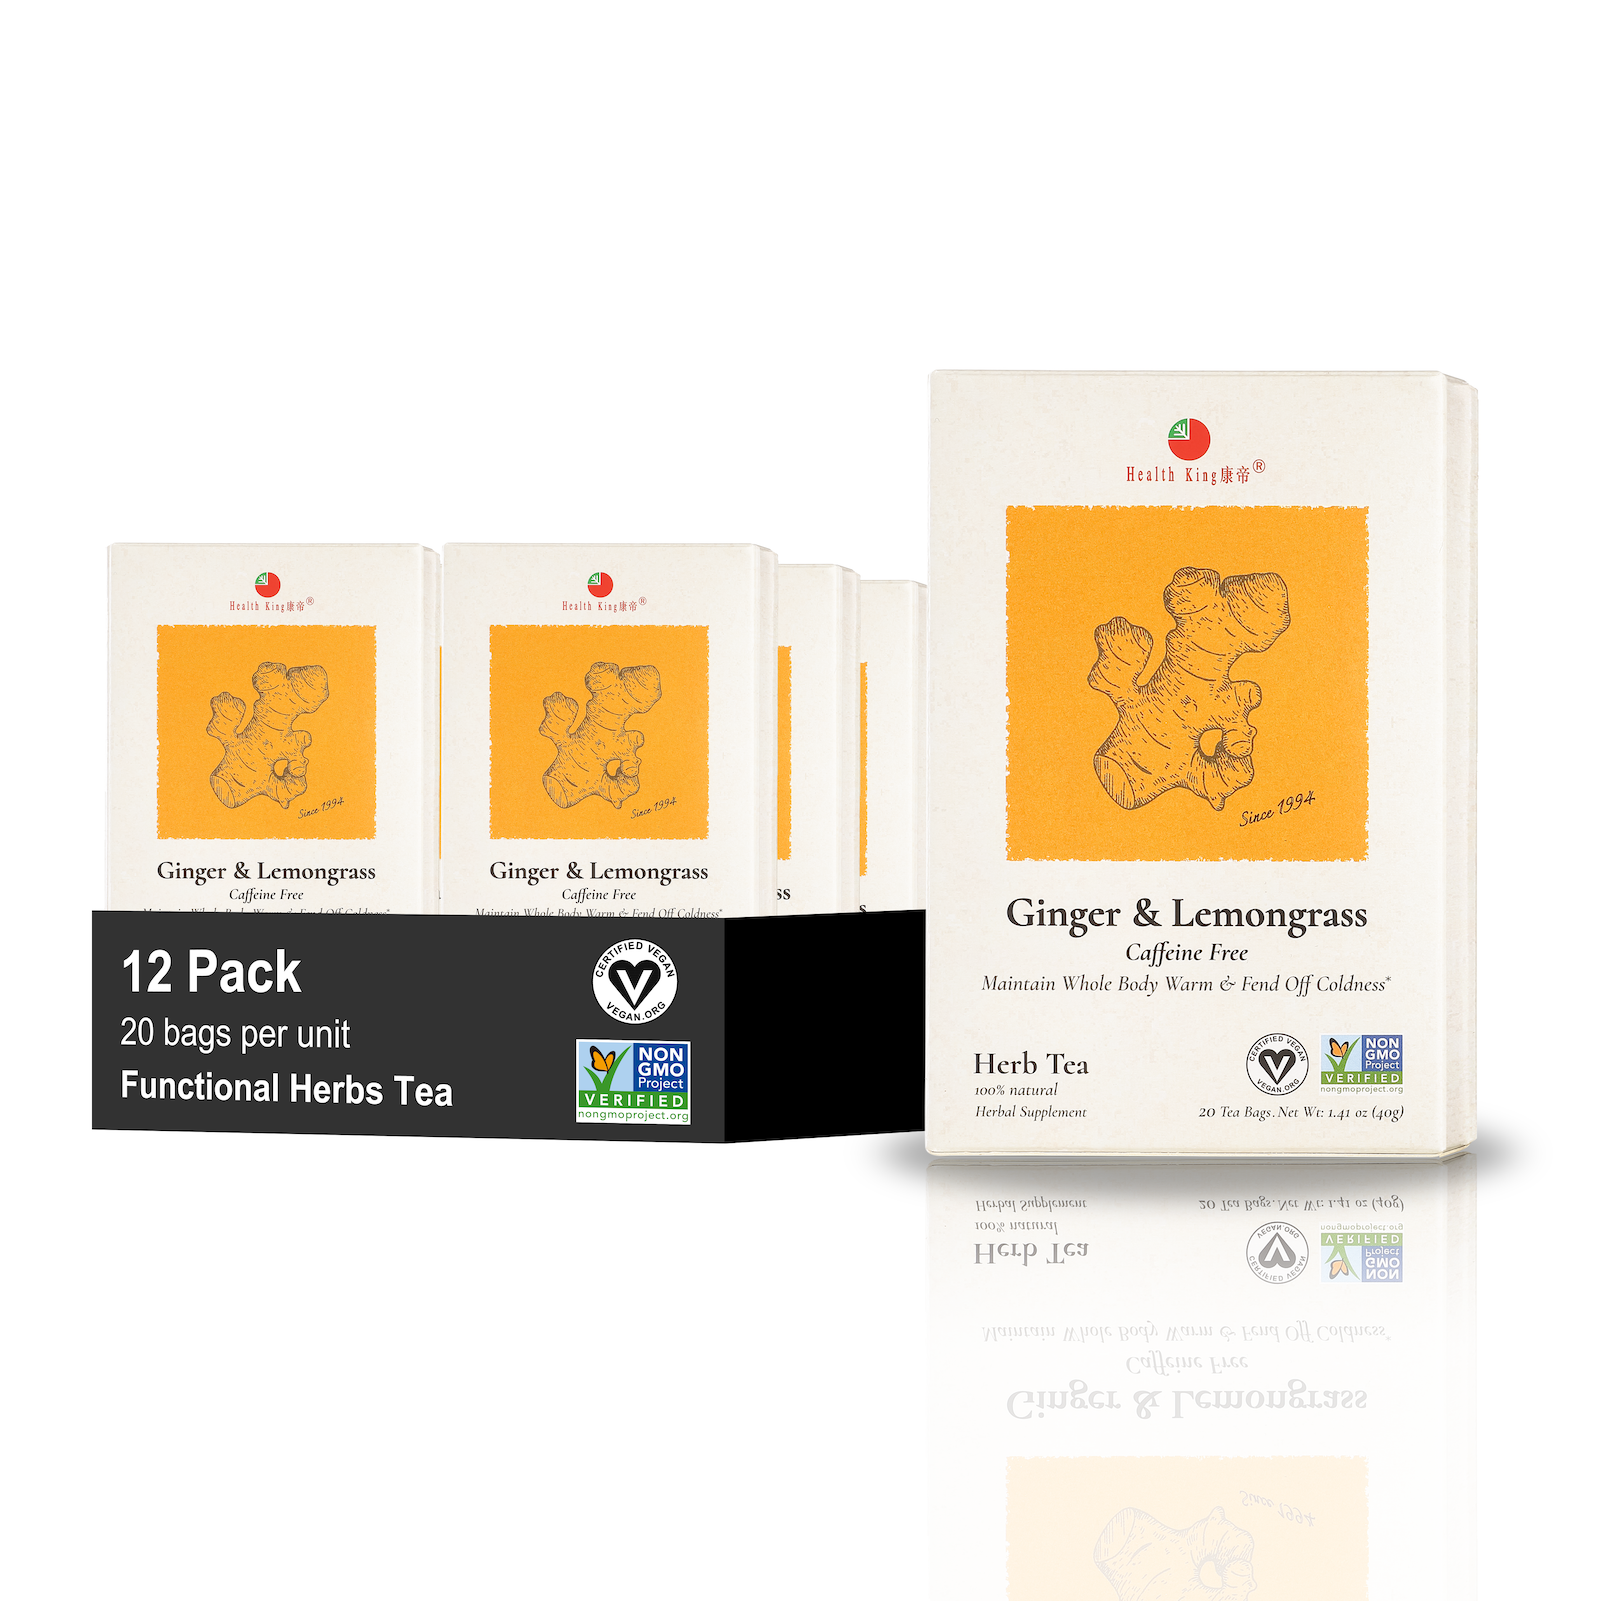 Twelve-pack of Ginger Lemongrass Tea boxes